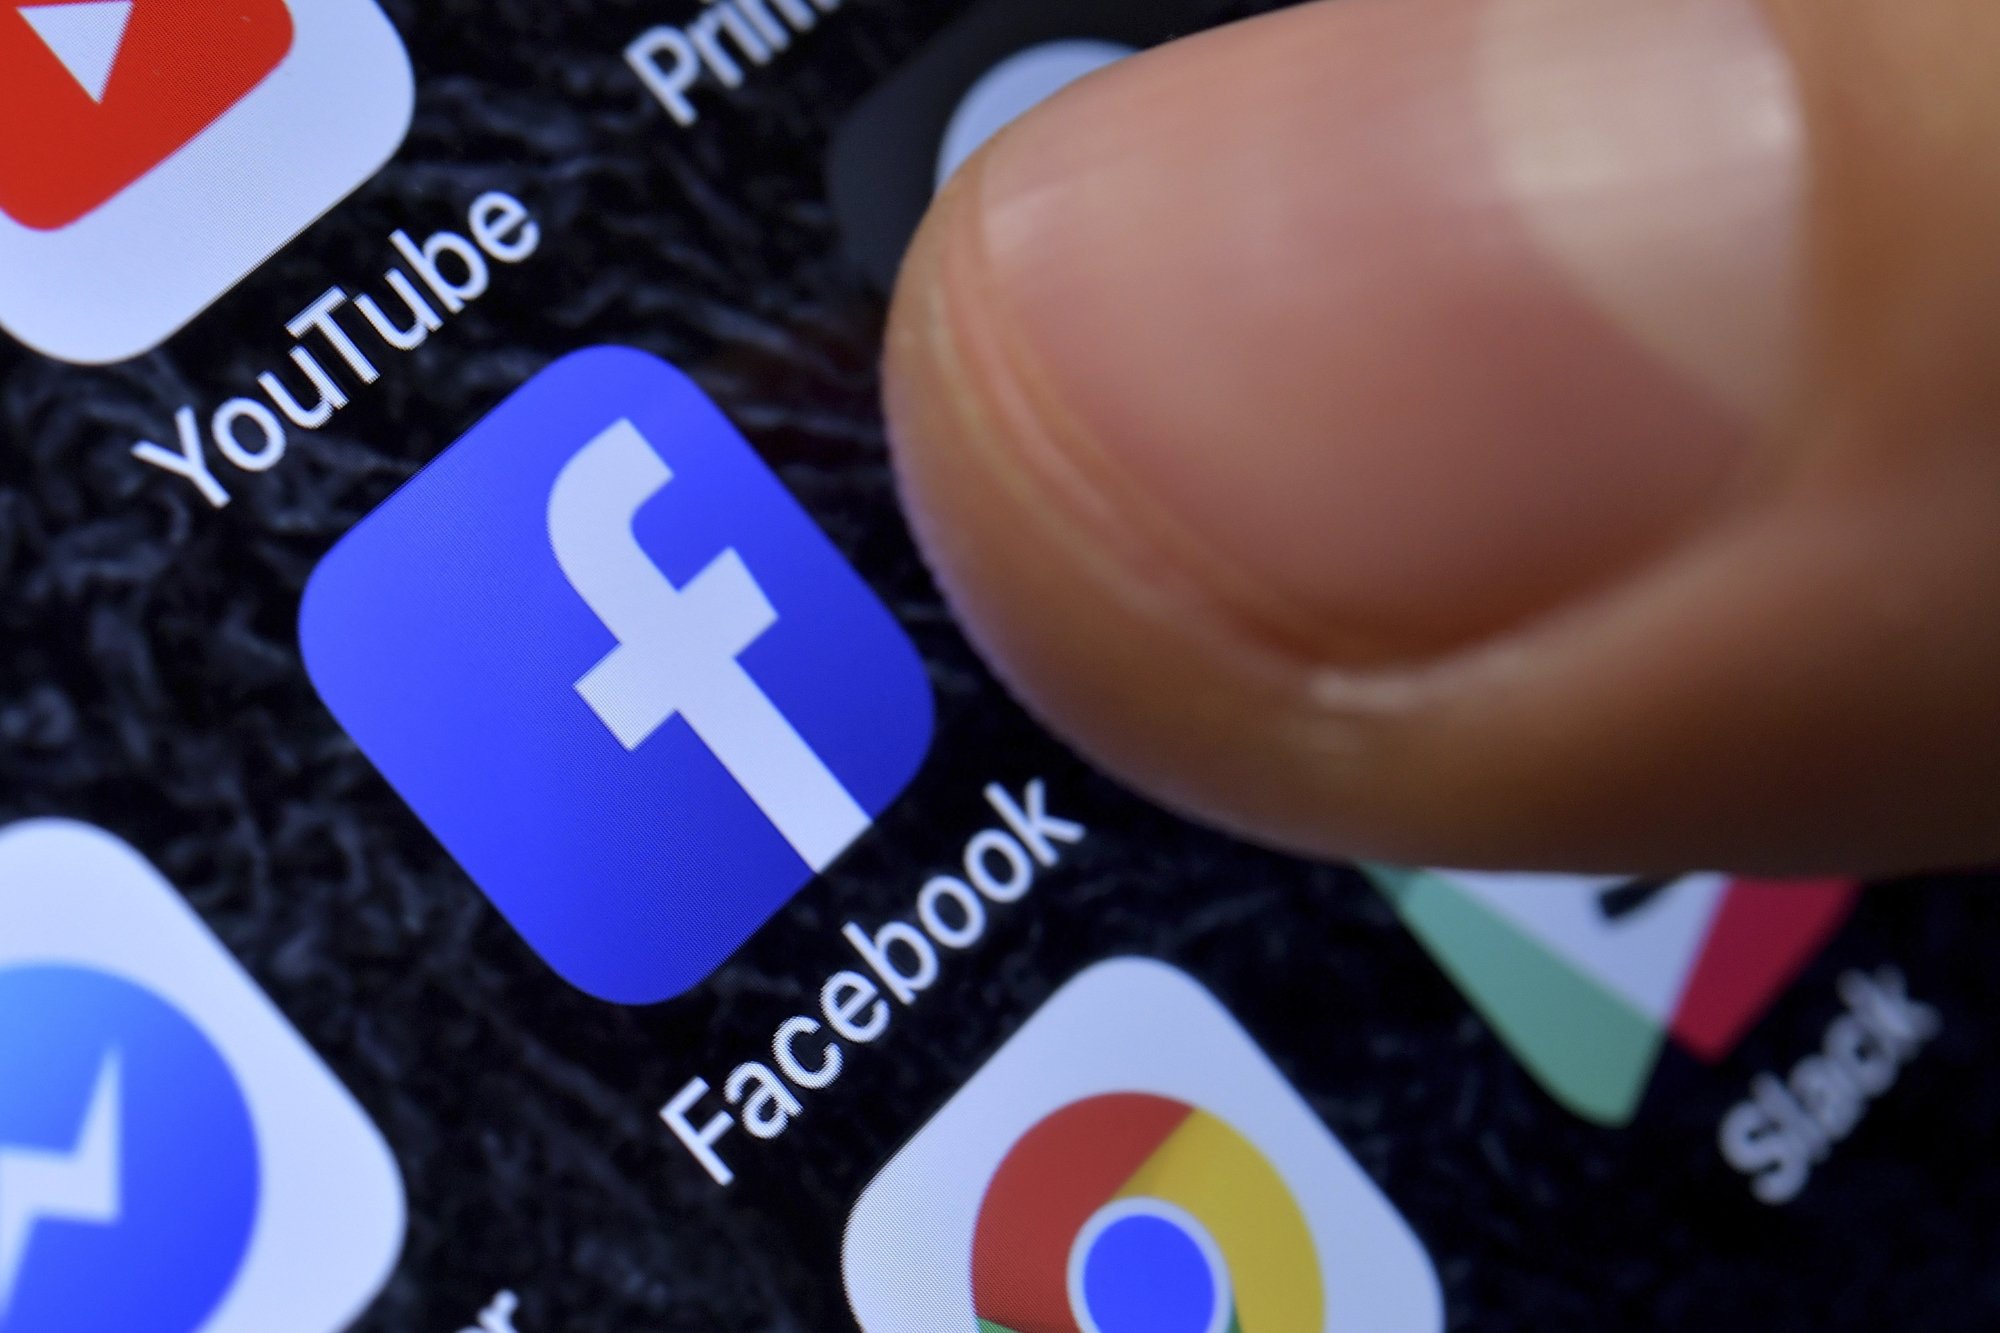 Un utilisateur de Facebook a partagé un contenu insultant émanant d'un tiers et a été condamné pour diffamation, relate Sébastien Fanti.